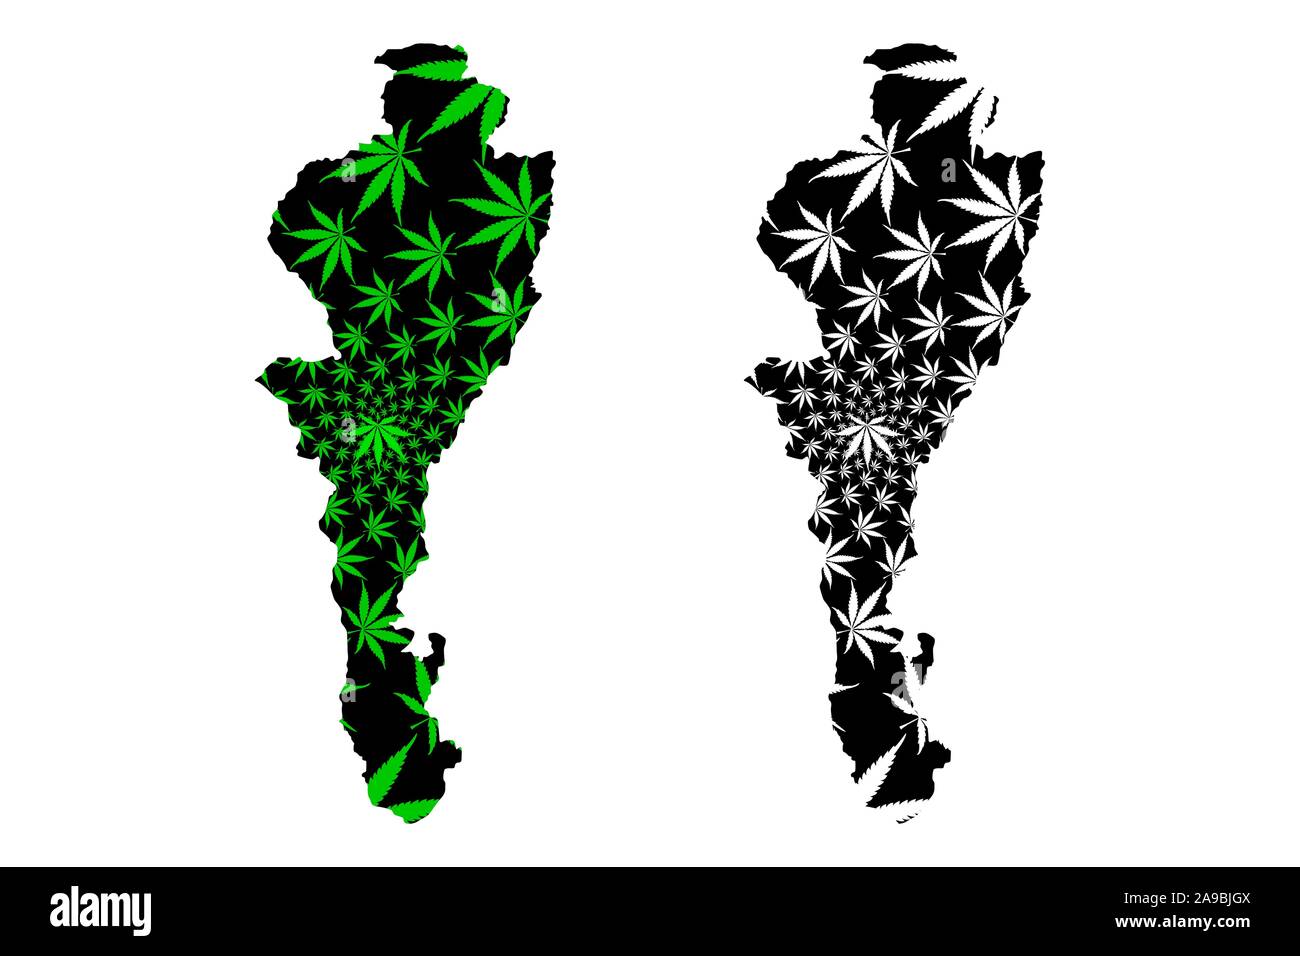 Cesar Ministère (Colombie, République de Colombie, les ministères de la Colombie) la carte est conçue de feuilles de cannabis vert et noir, Cesar carte fait de la marijuana Illustration de Vecteur